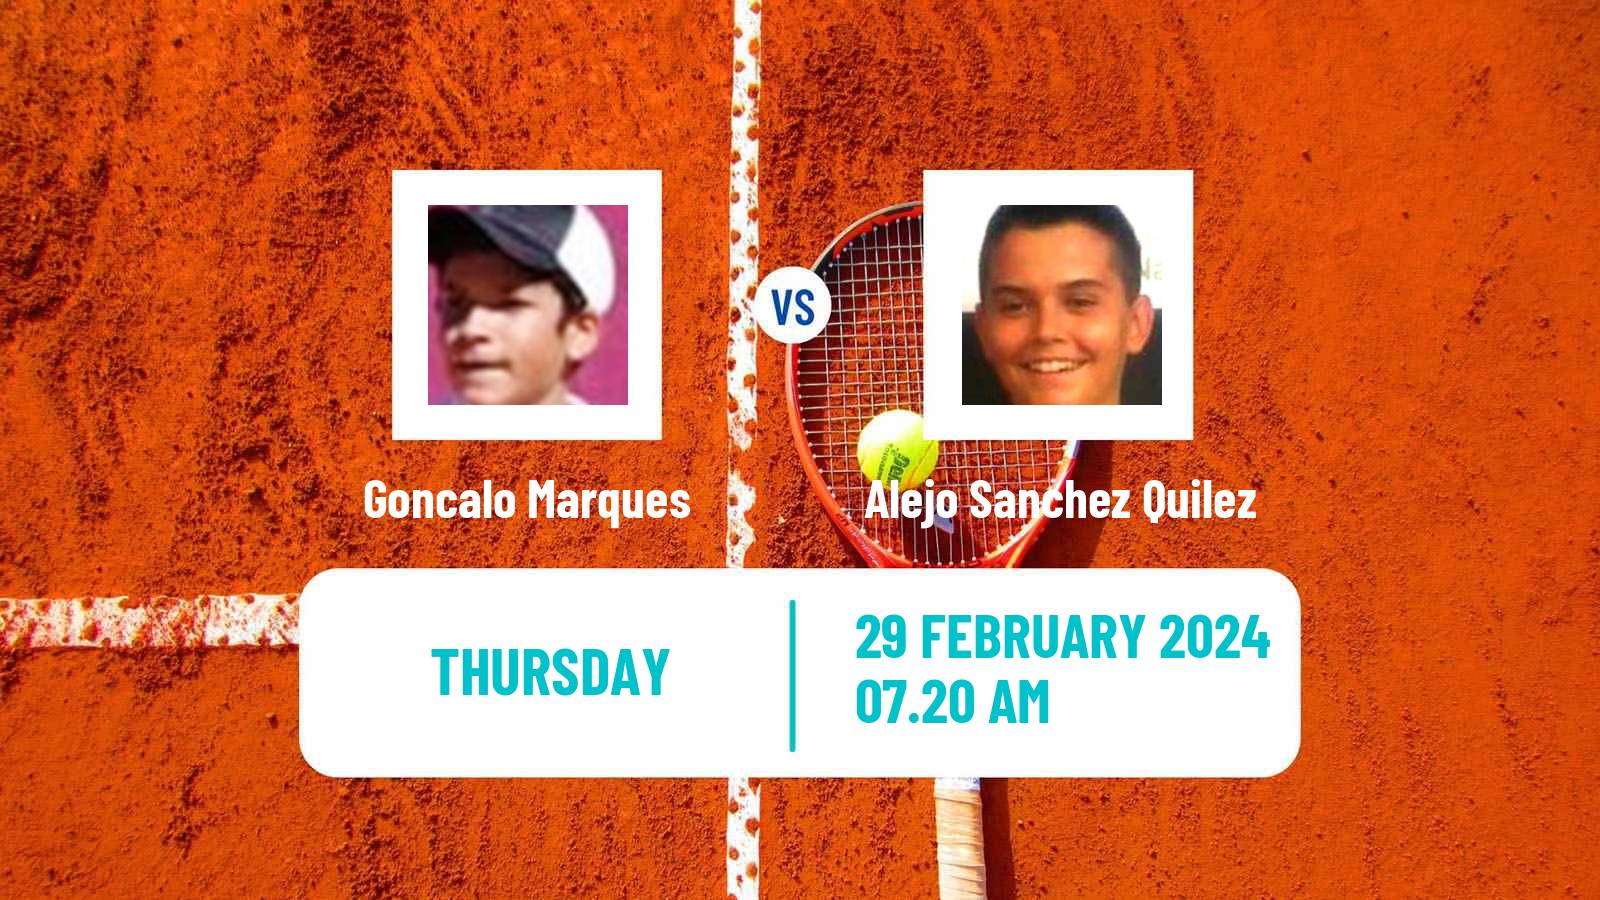 Tennis ITF M15 Villena 2 Men Goncalo Marques - Alejo Sanchez Quilez